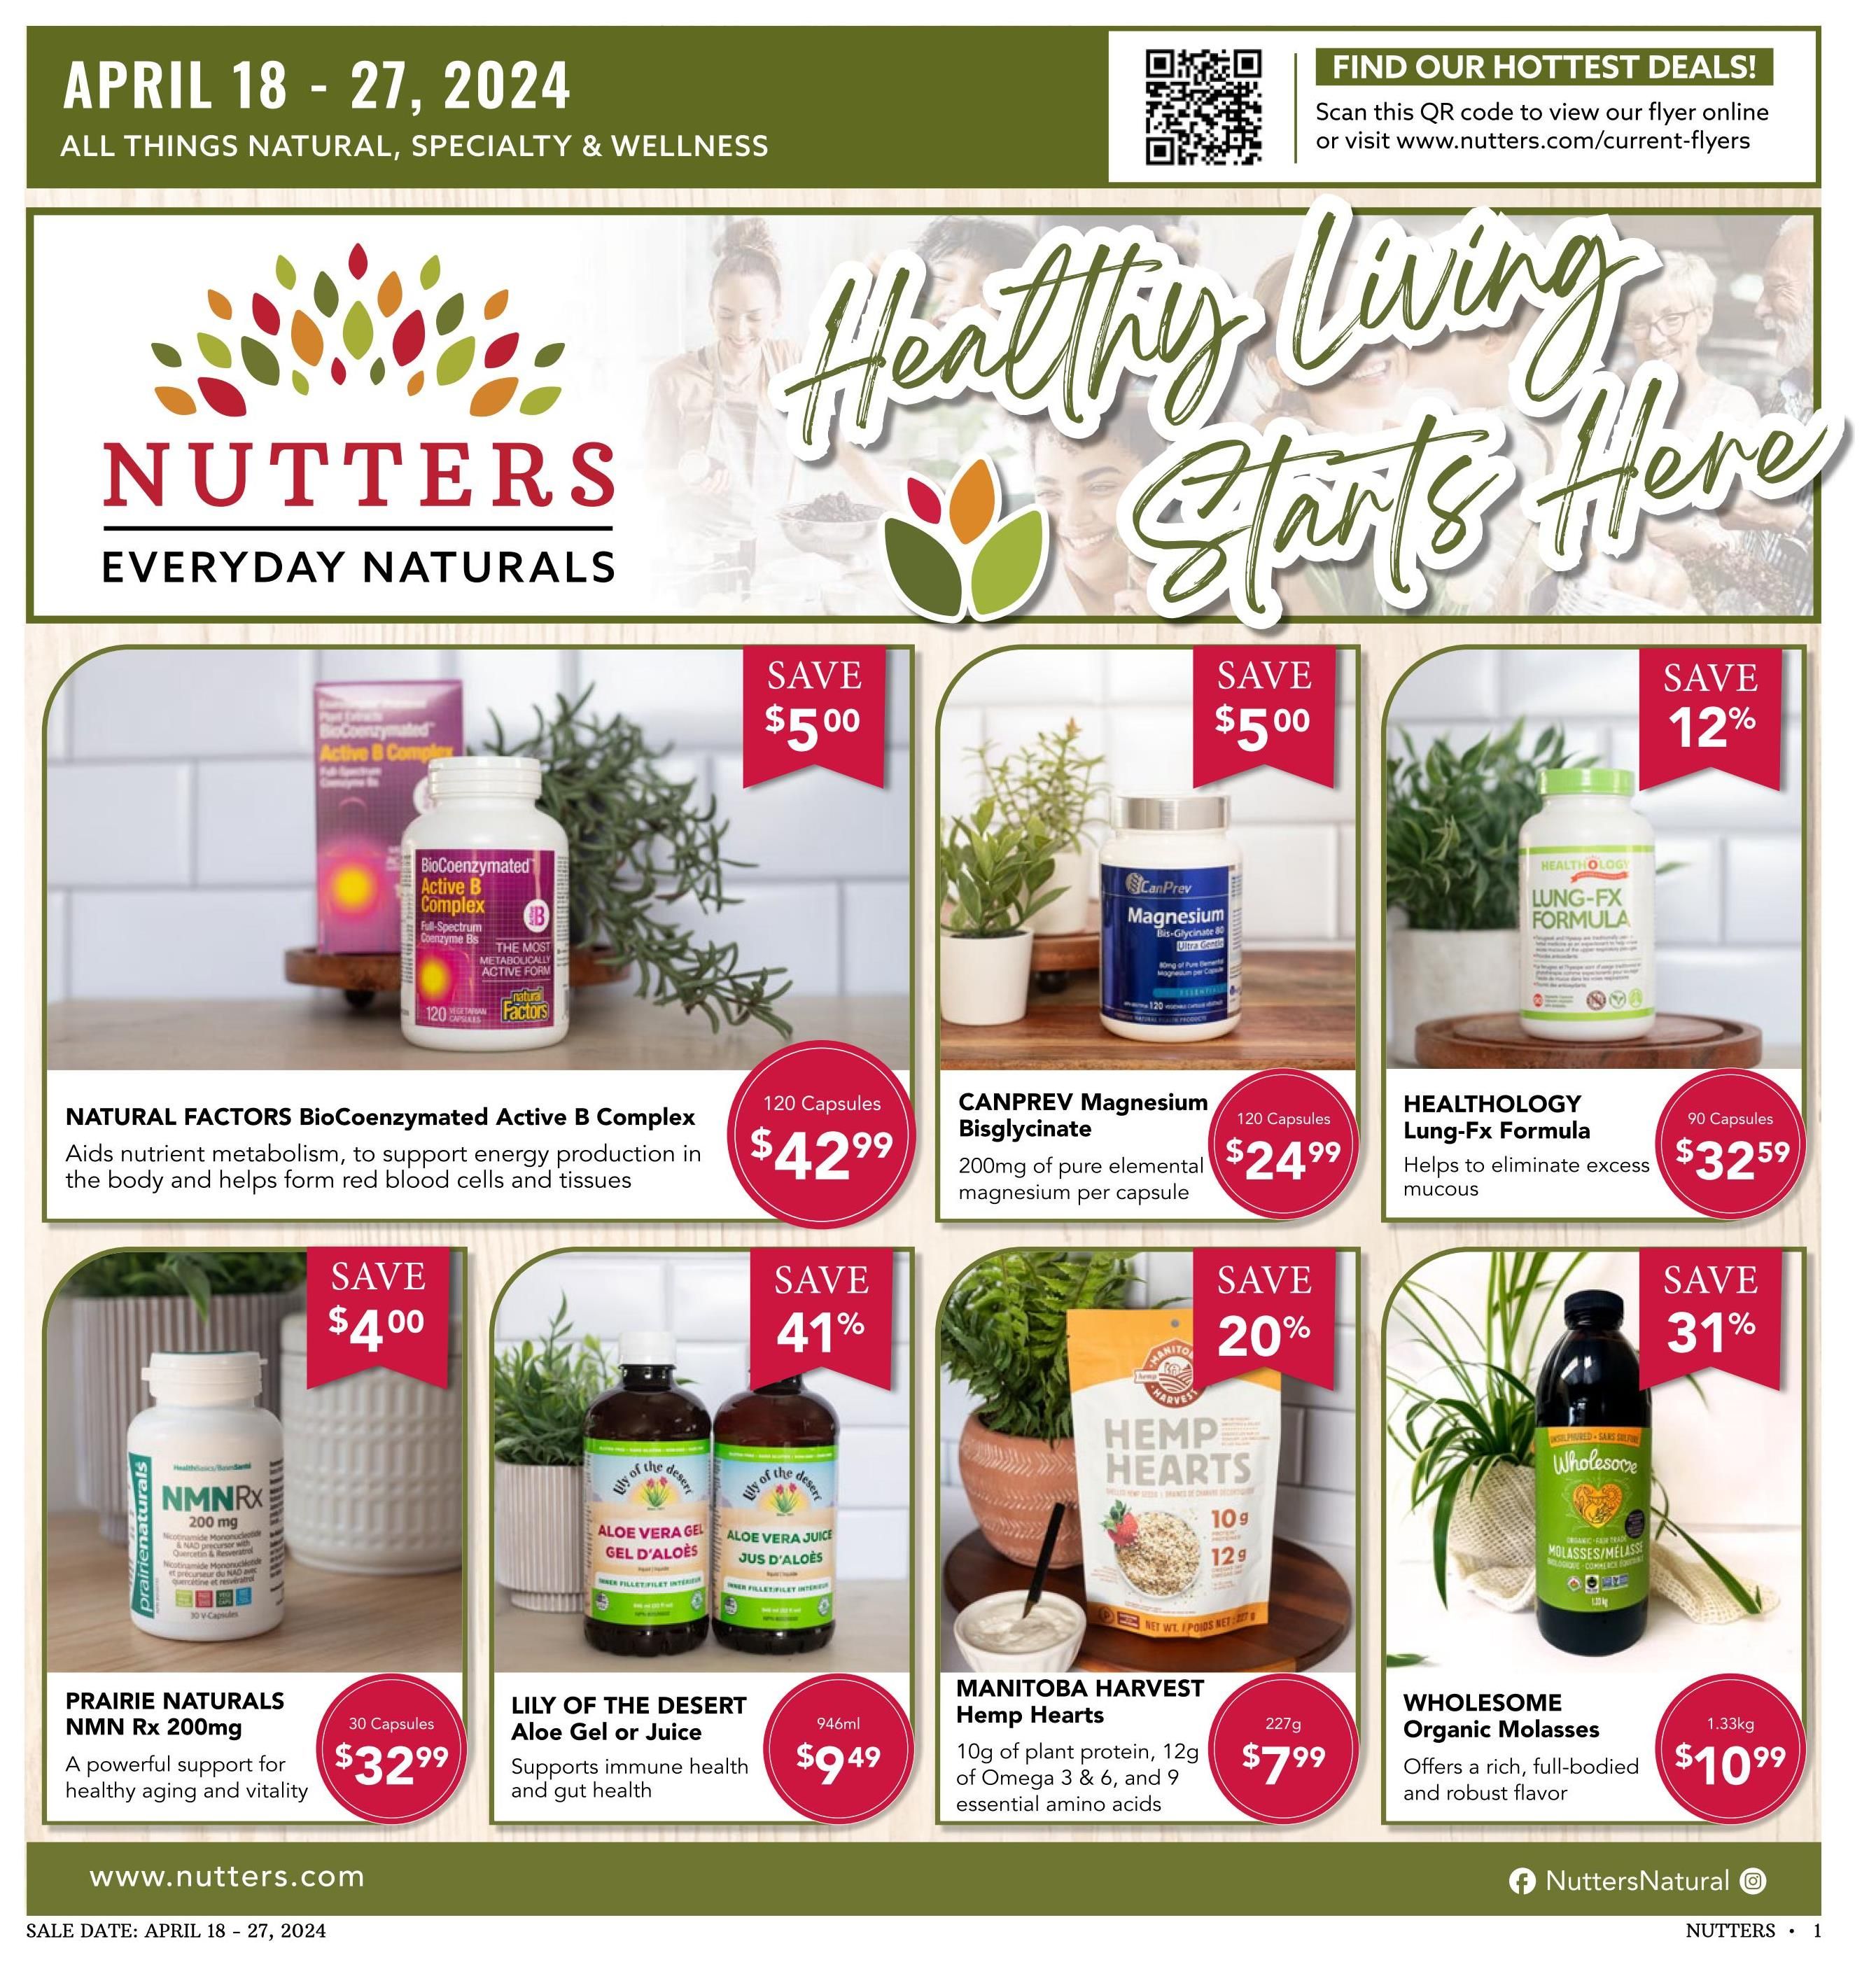 Nutter's Bulk & Natural Foods - 2 Weeks of Savings